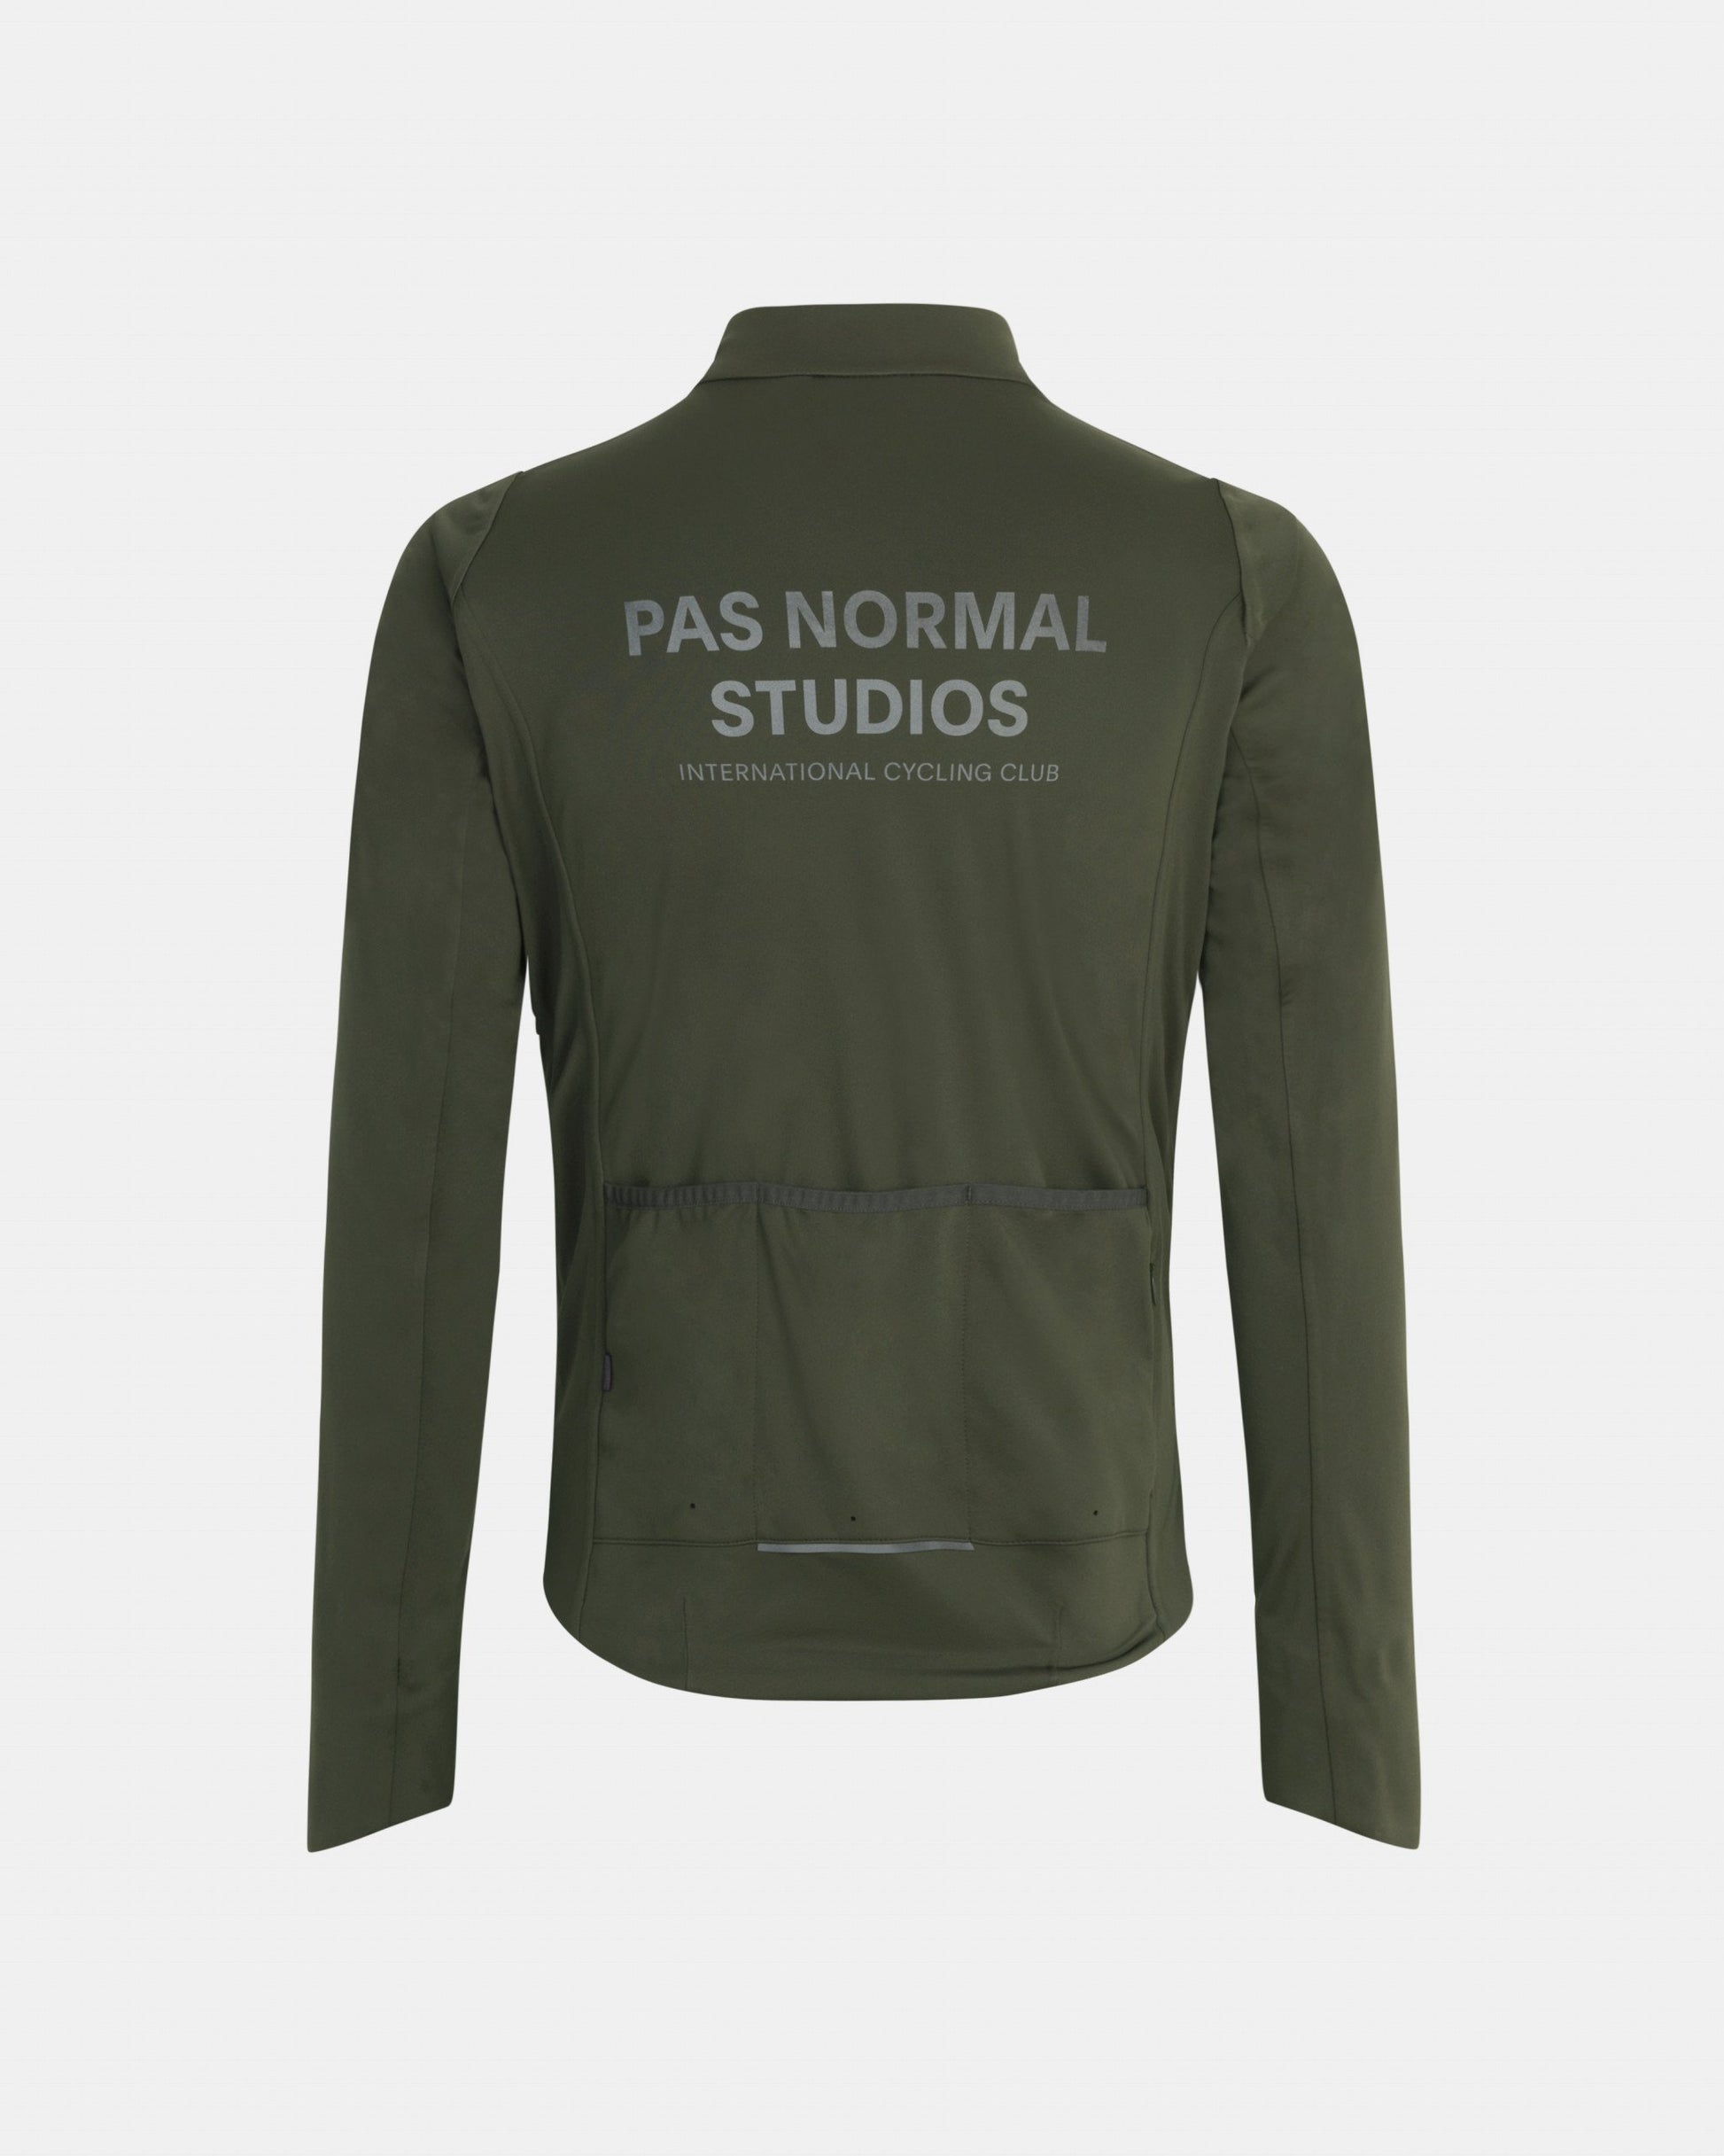 Pas Normal Studios Jacket Winter Control Homme Olive Manteaux Pas Normal Studios 